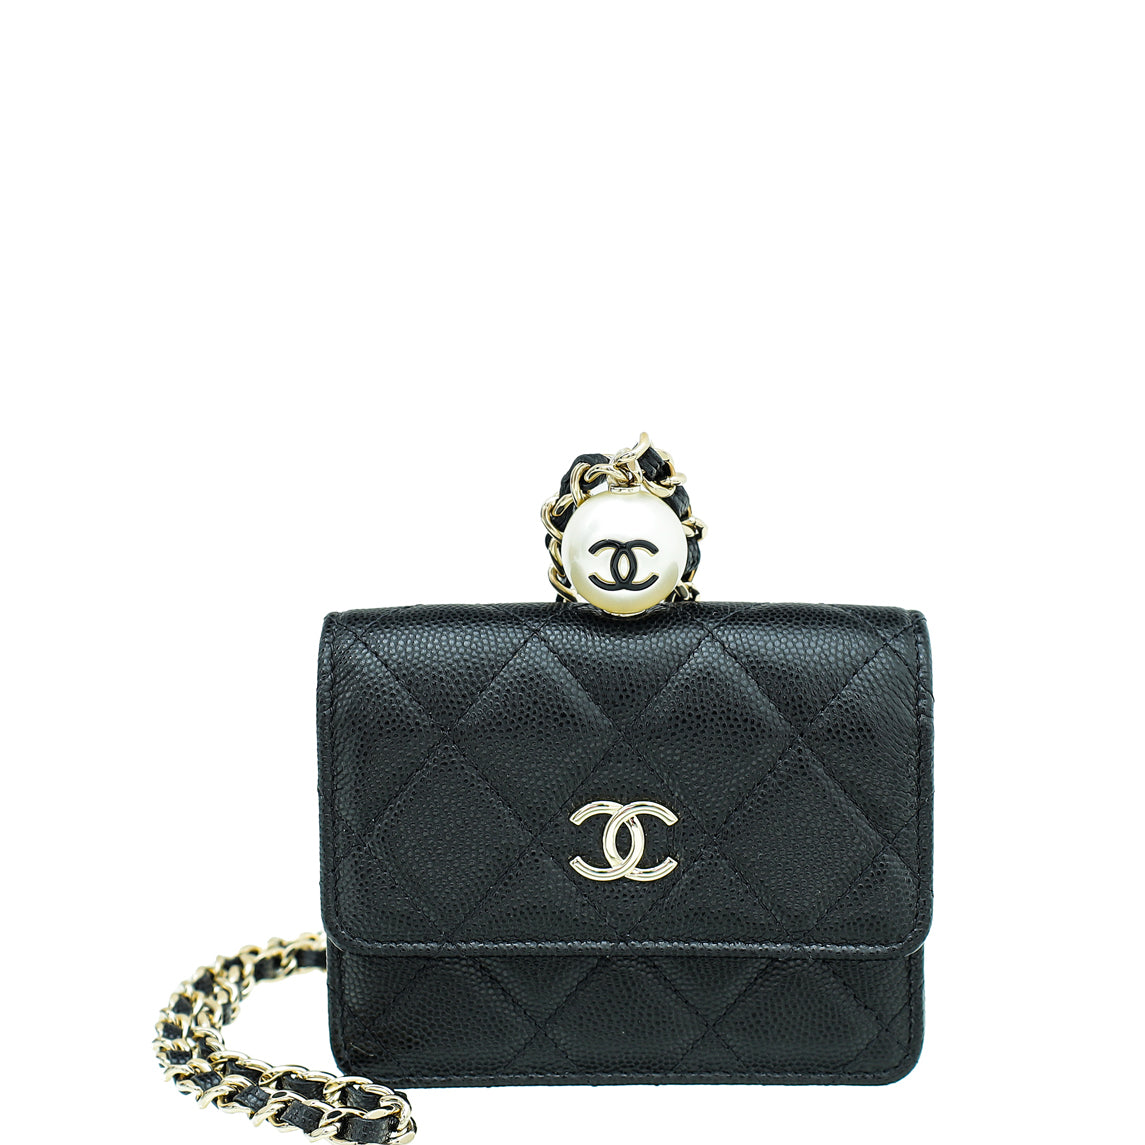 Chanel Pearl Strap Micro Bag  THE PURSE AFFAIR